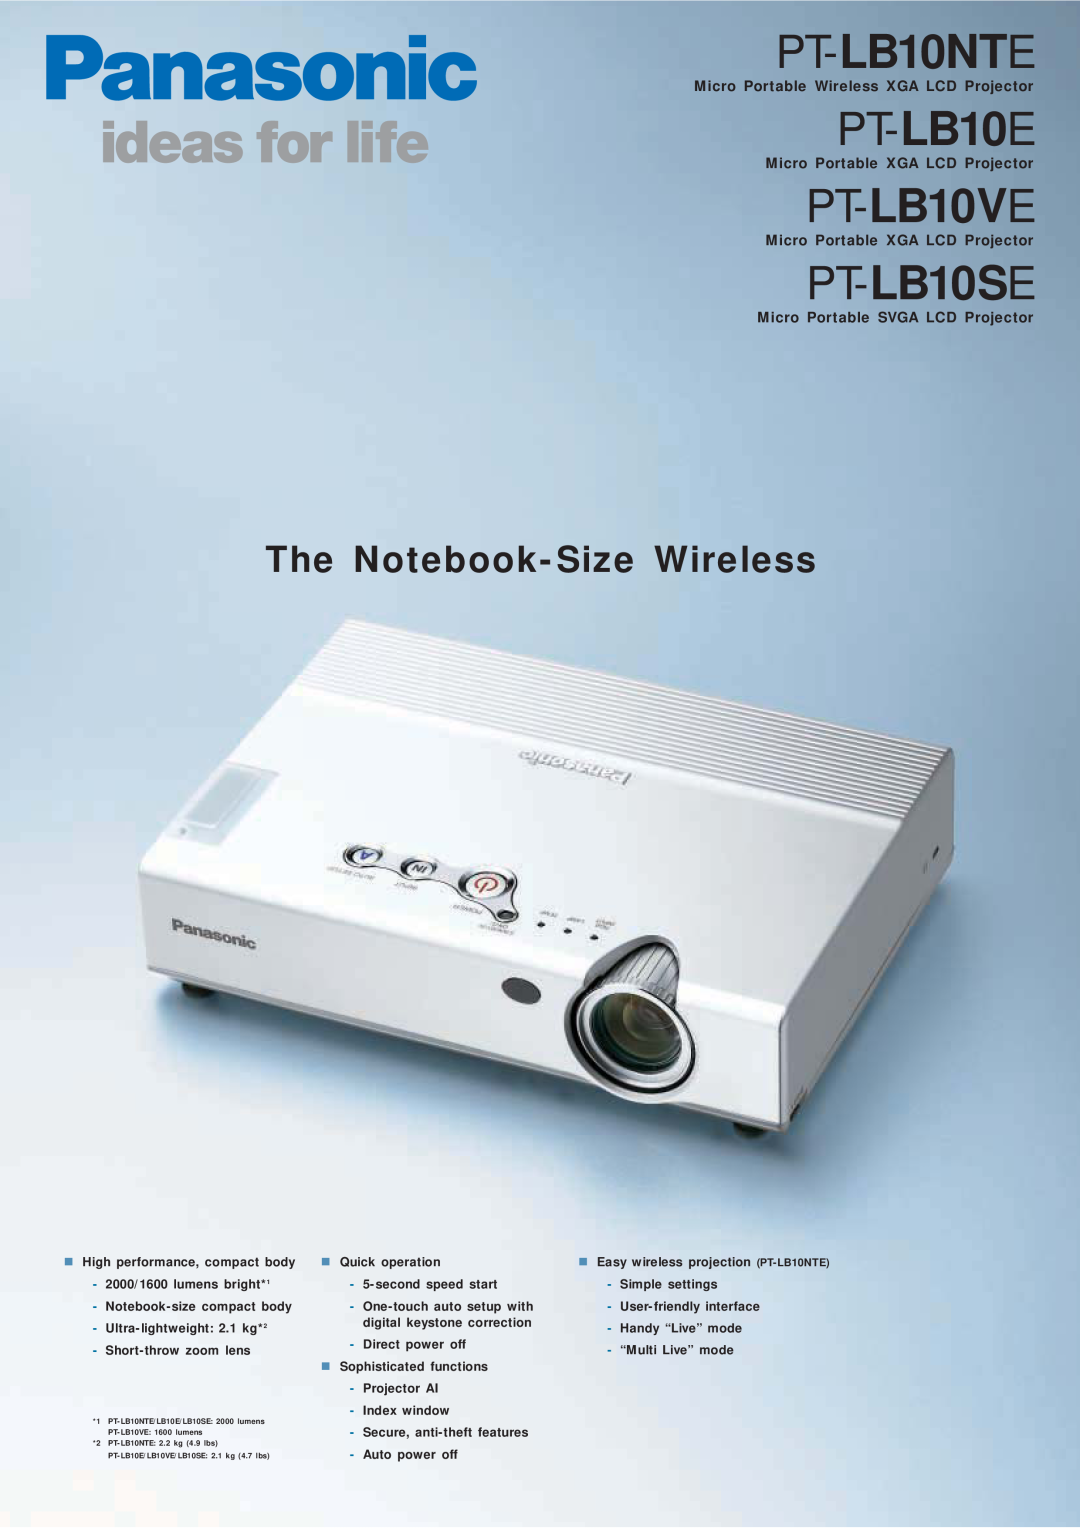 Panasonic PT-LB10SE manual PT-LB10NTE, PT-LB10E, PT-LB10VE, The Notebook-Size Wireless, Micro Portable XGA LCD Projector 